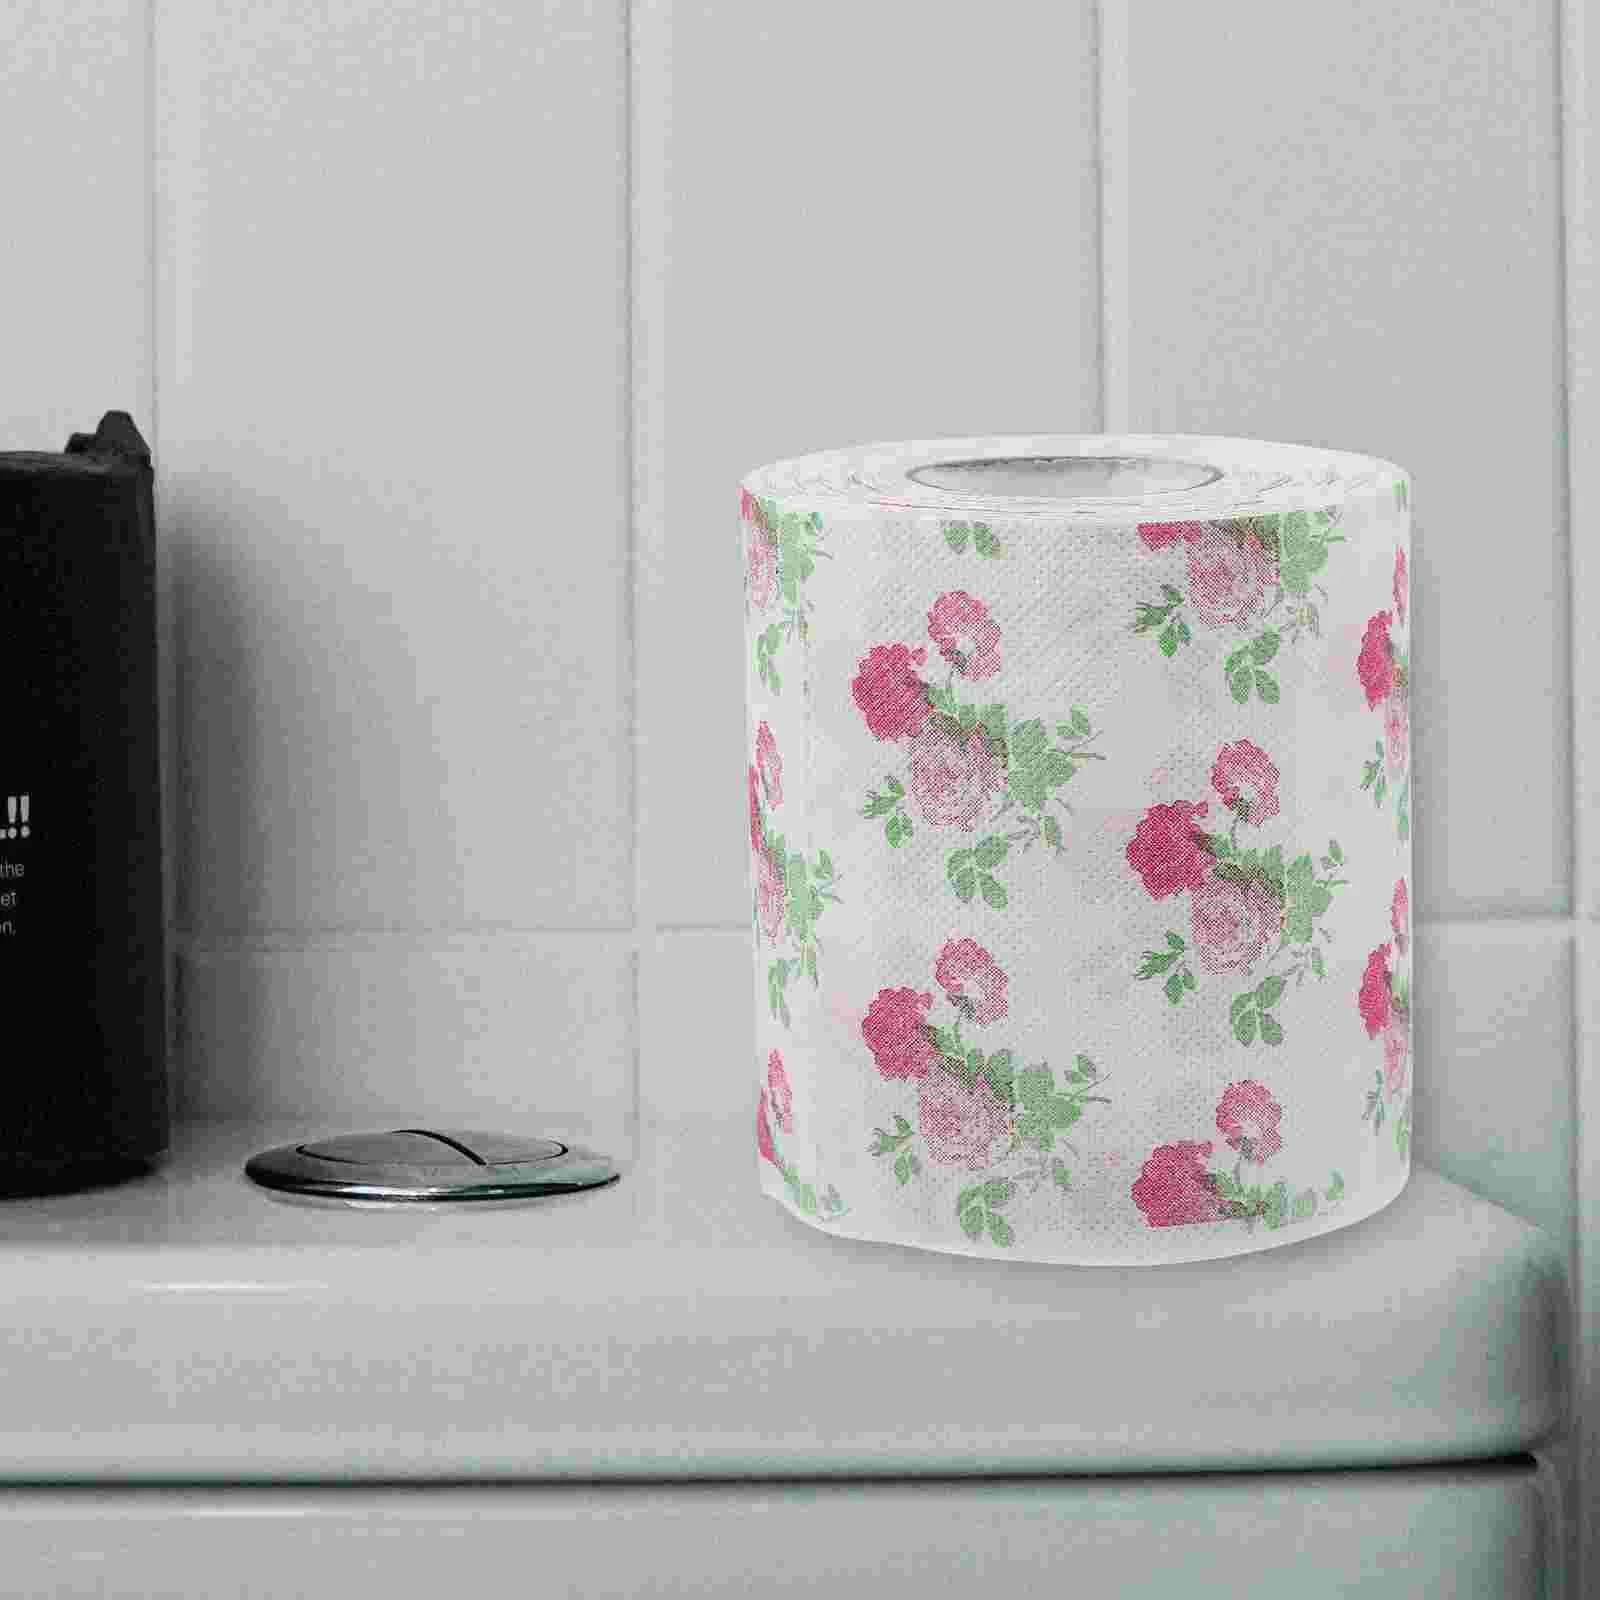 

2 рулона туалетной бумаги с тематическим оформлением